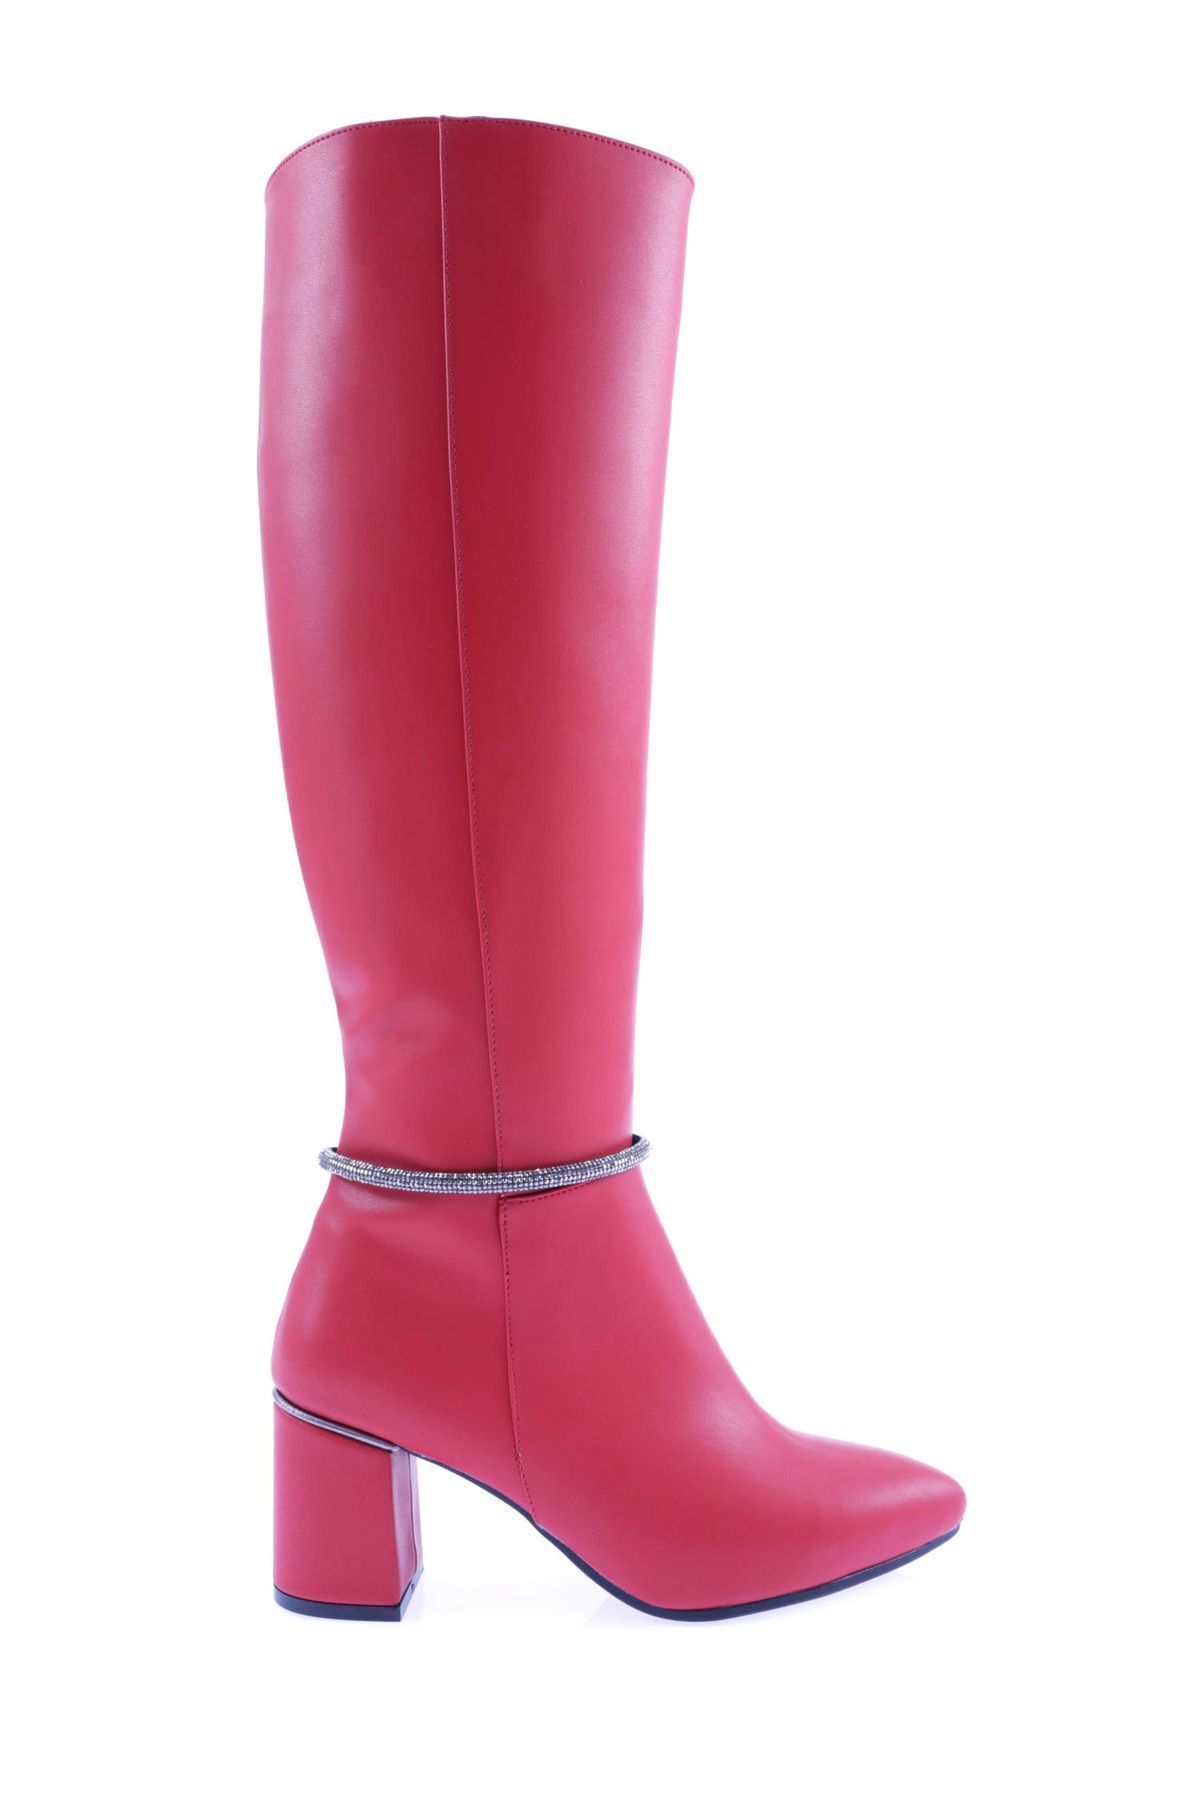 Dgn 133-2164-22k Kadın Zincirli Topuklu Çizme Kırmızı